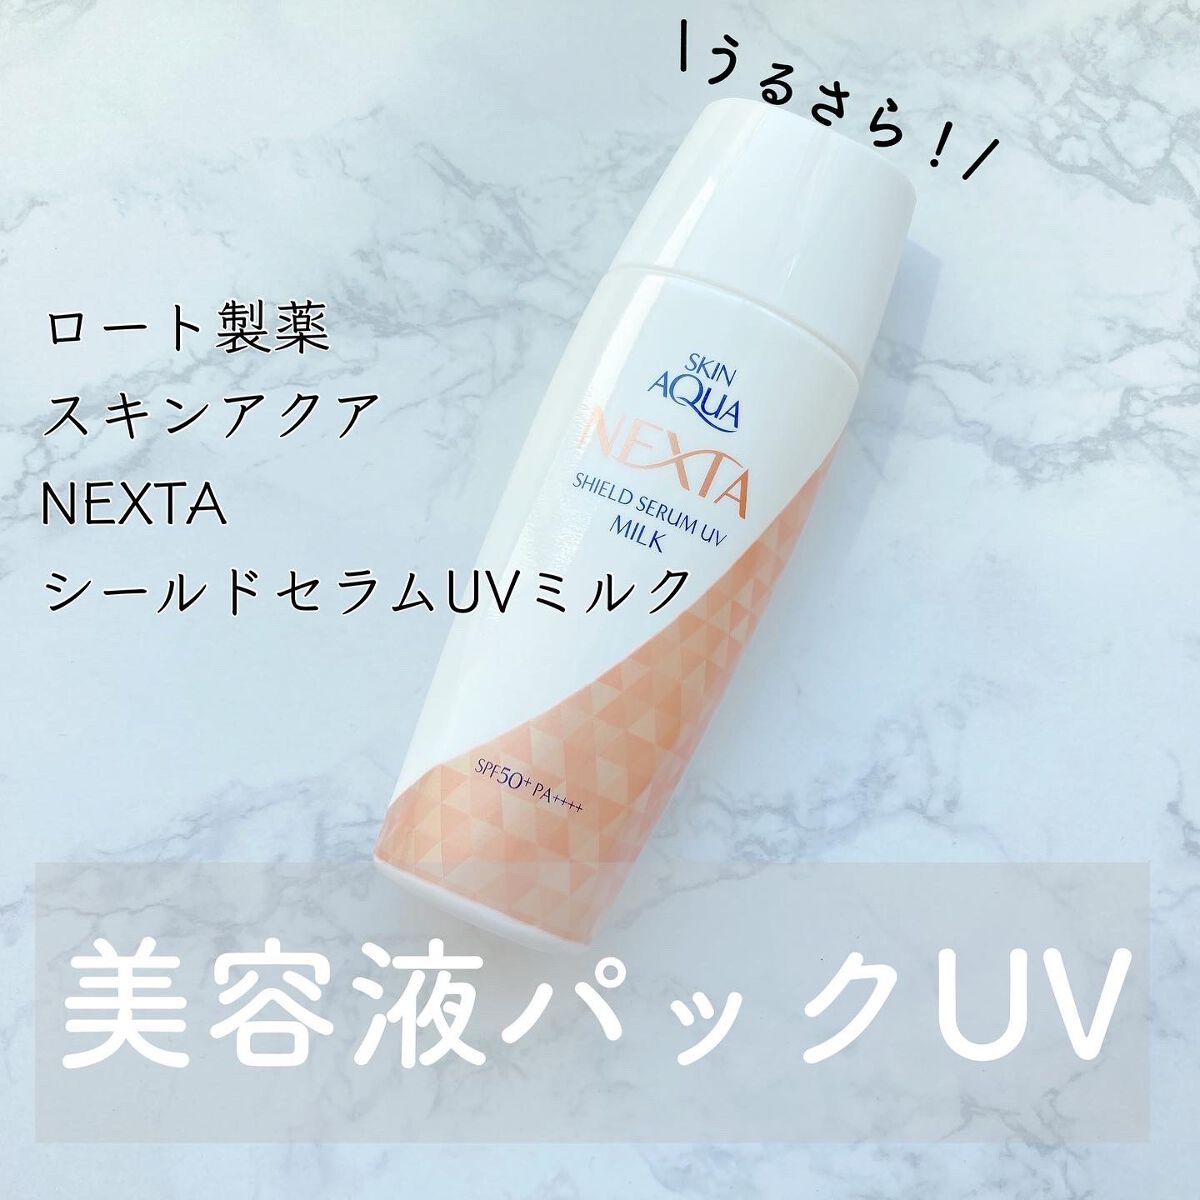 ロート製薬・スキンアクア・NEXTA・ネクスタ・美容液UVプロテクト